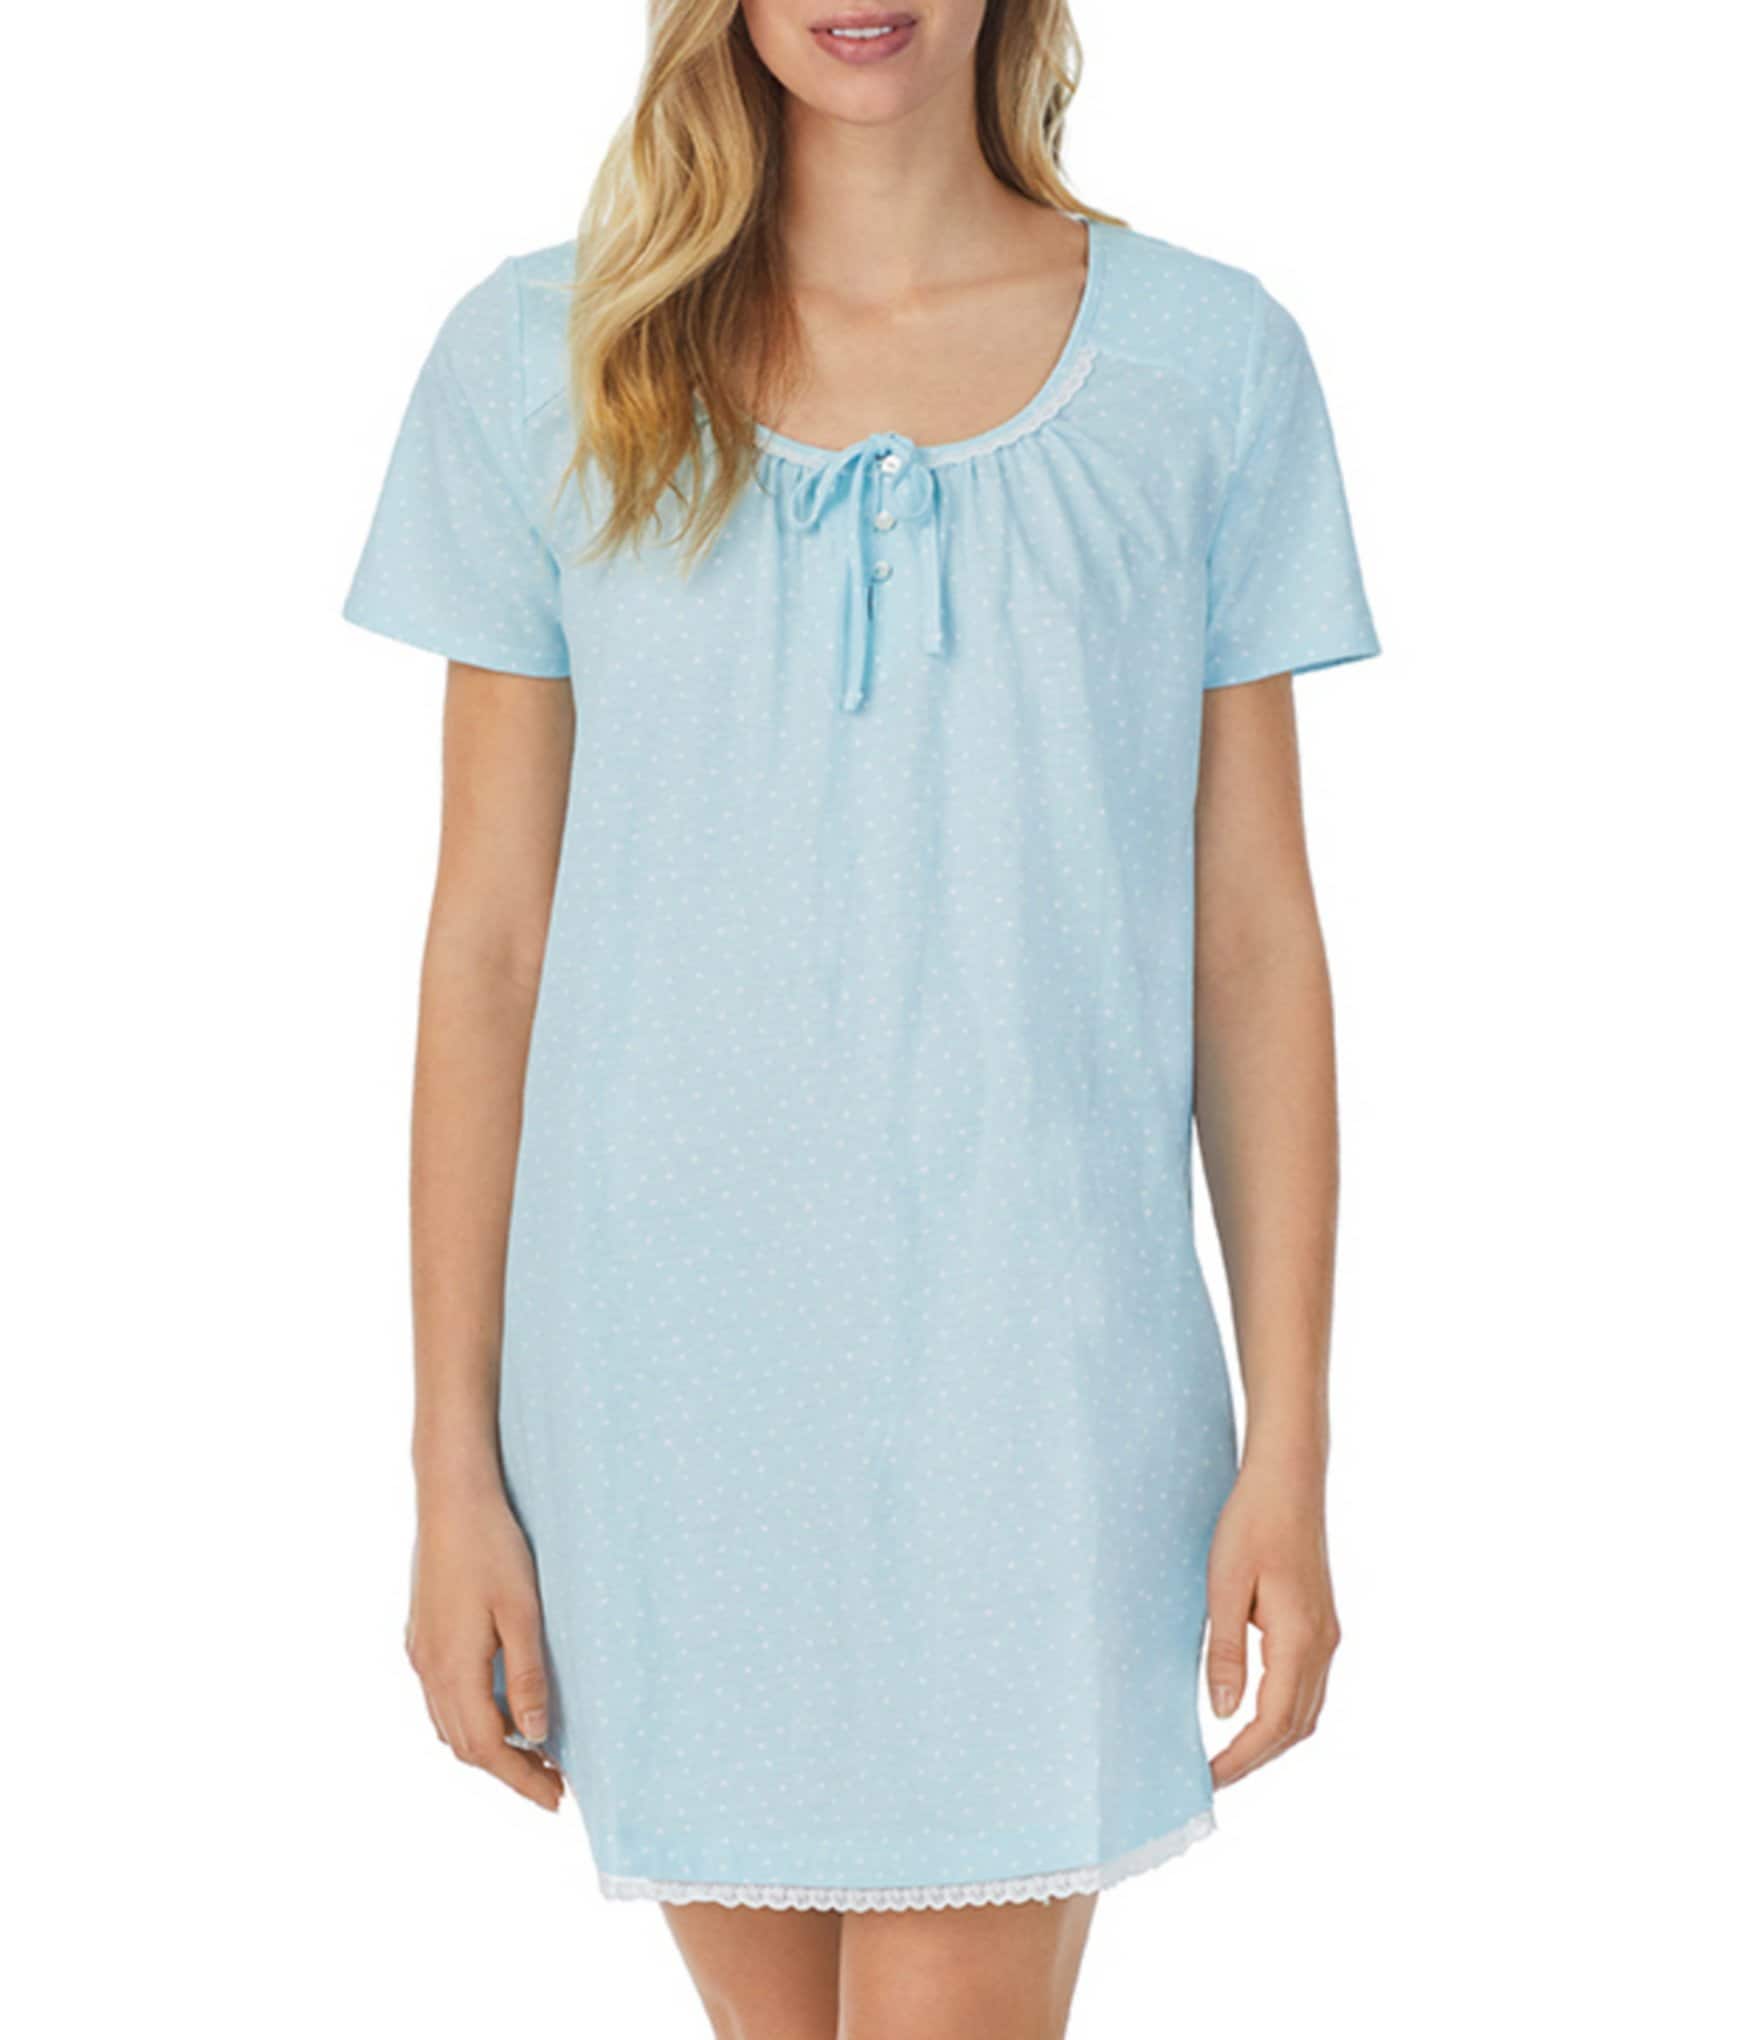 Blue Lingerie : Pajamas, Bras, & Panties